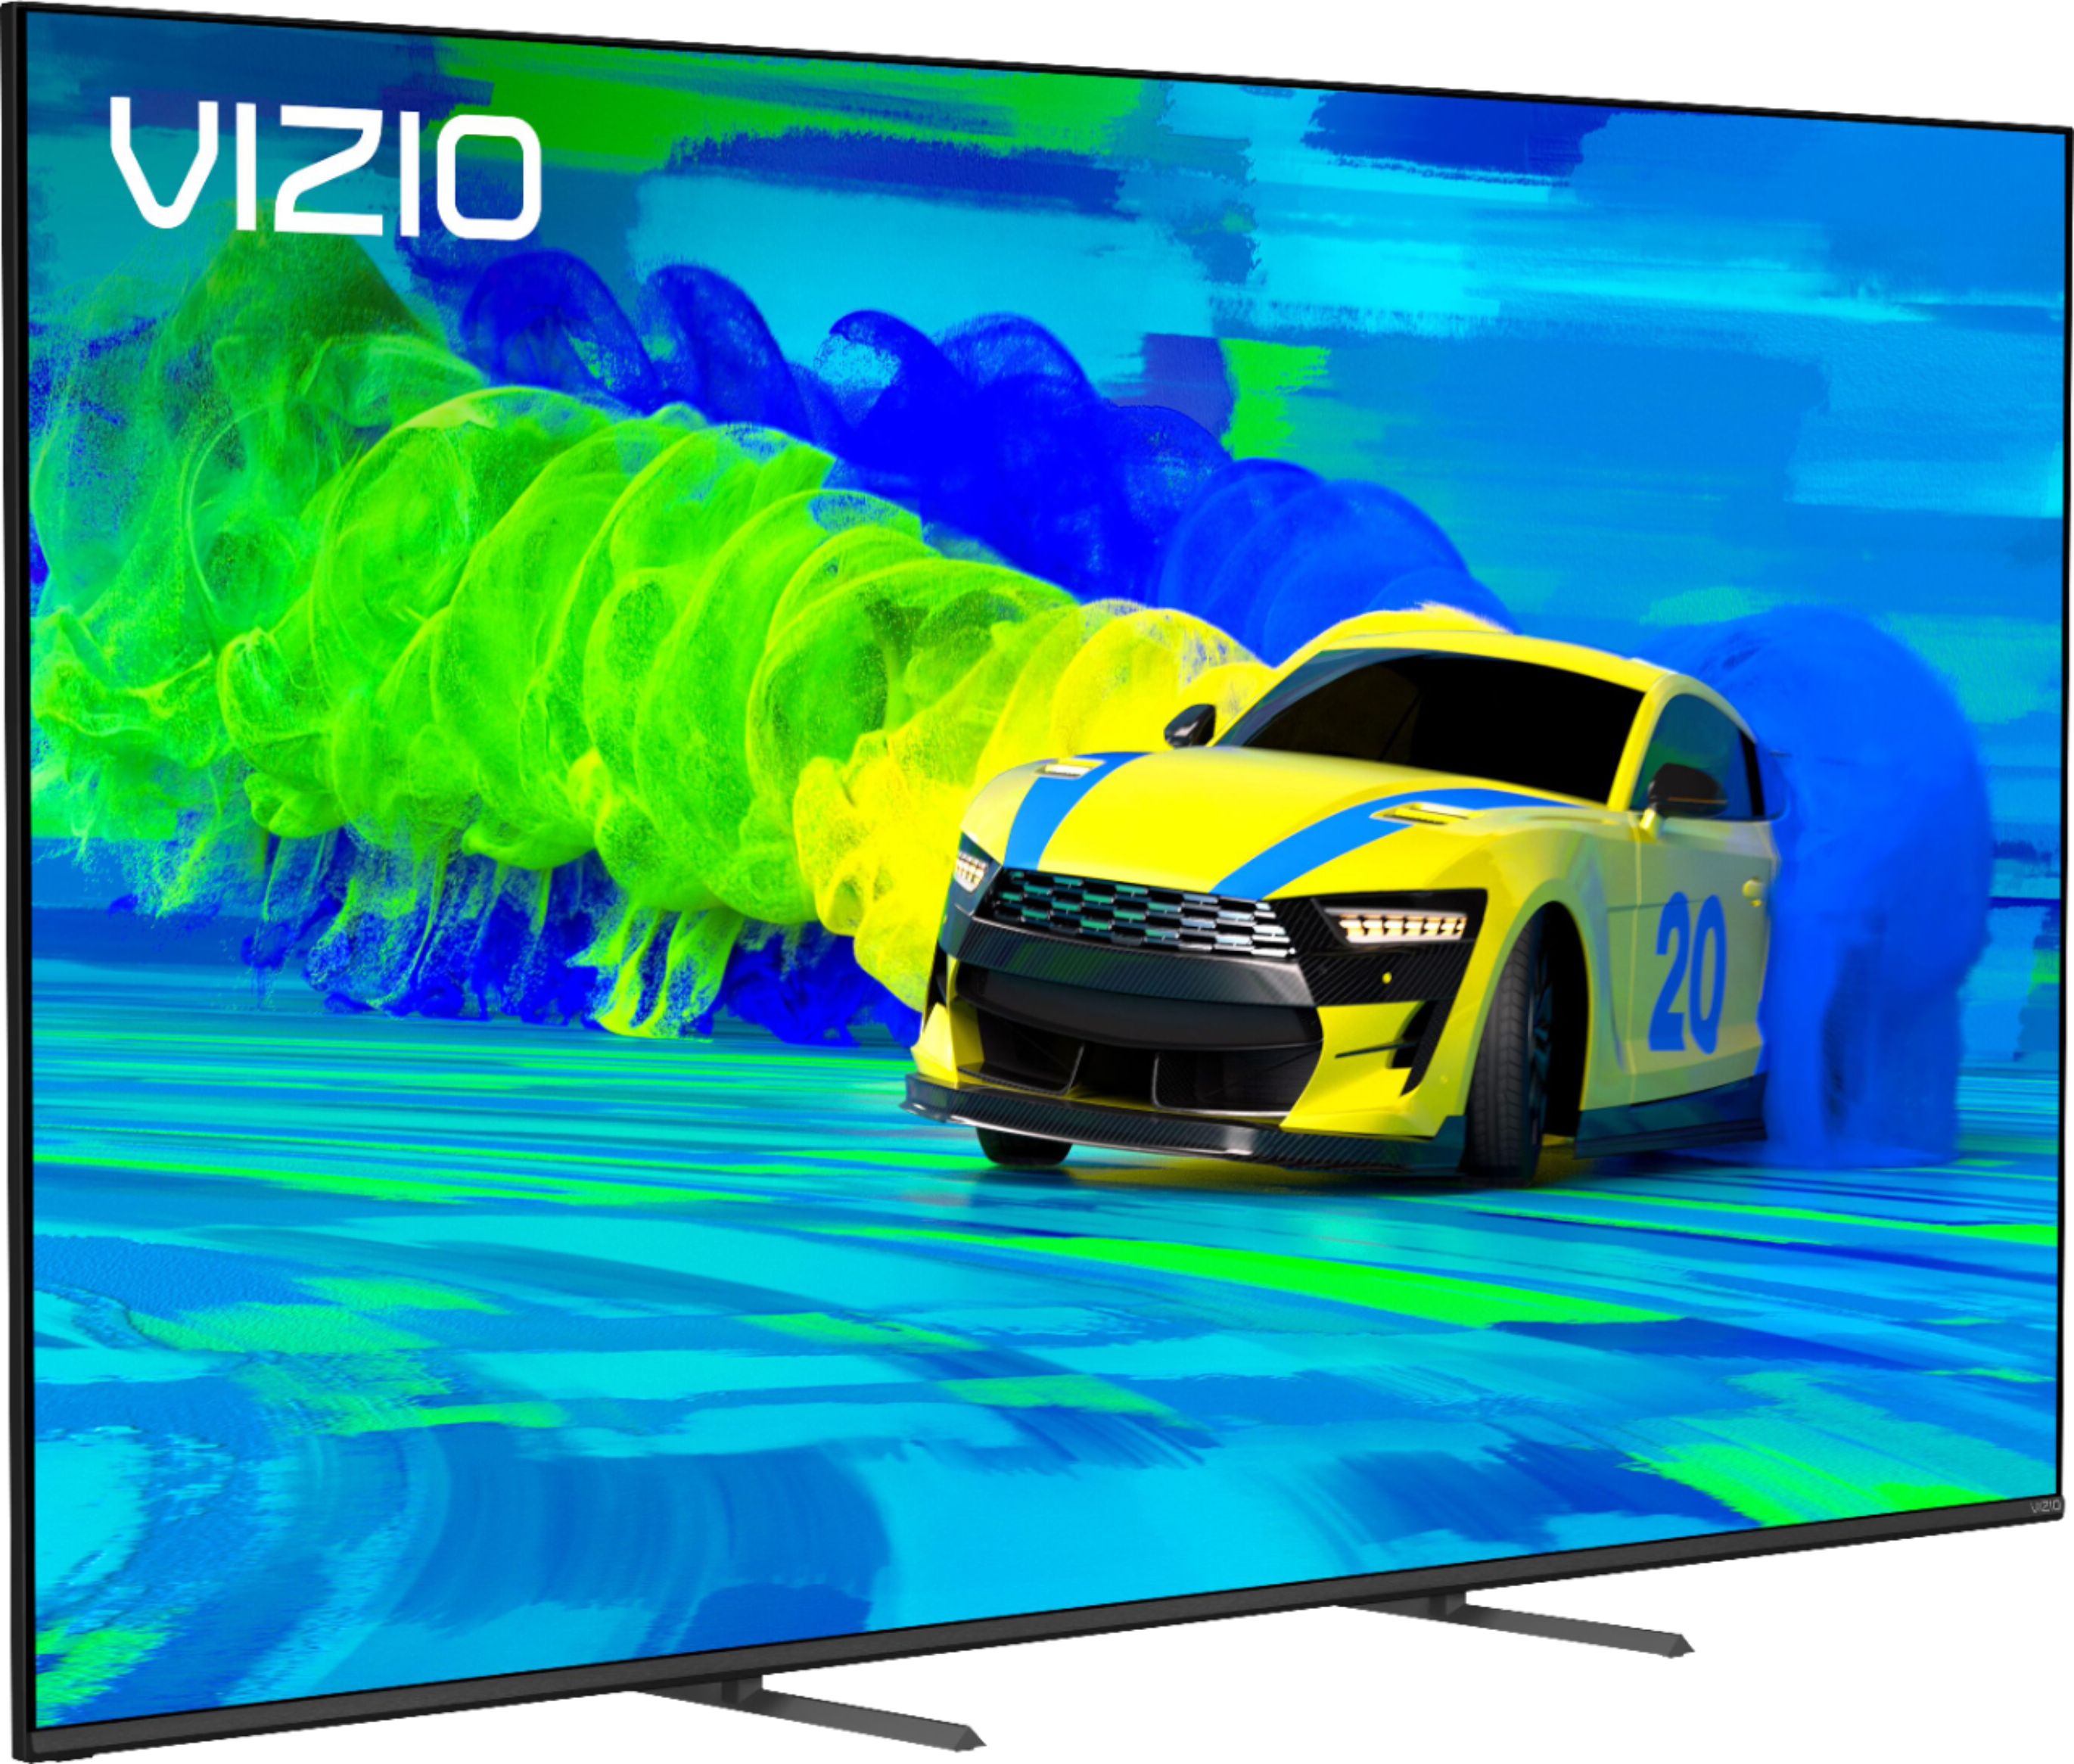 Vizio 70" M-Series (M70Q7) Quantum UHD HDR 4K TV @ Best Buy $699.99